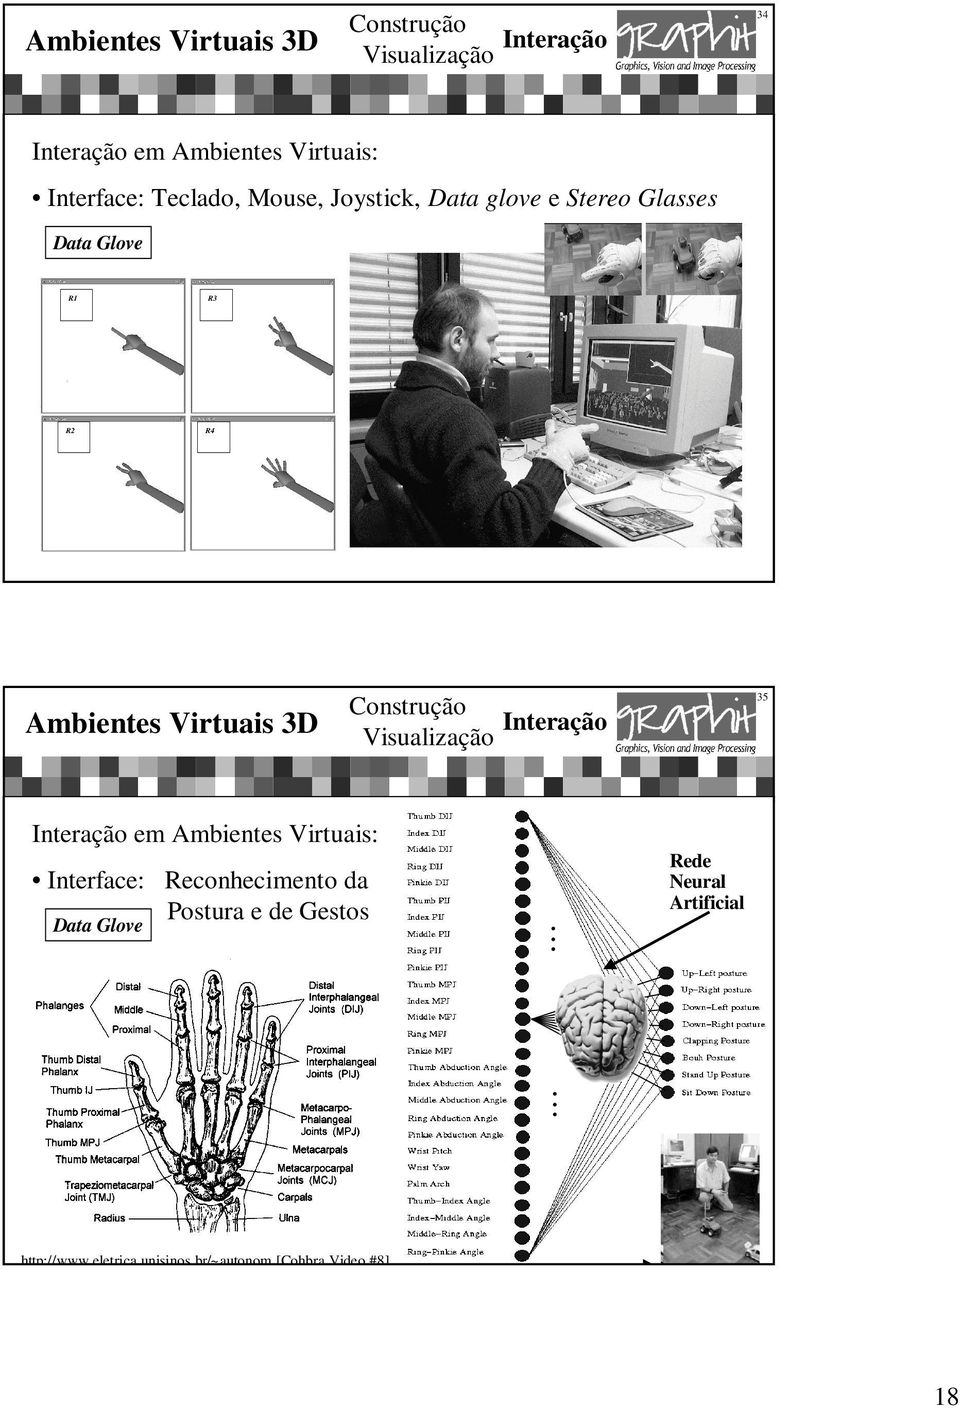 Virtuais: Interface: Reconhecimento da Postura e de Gestos Data Glove.